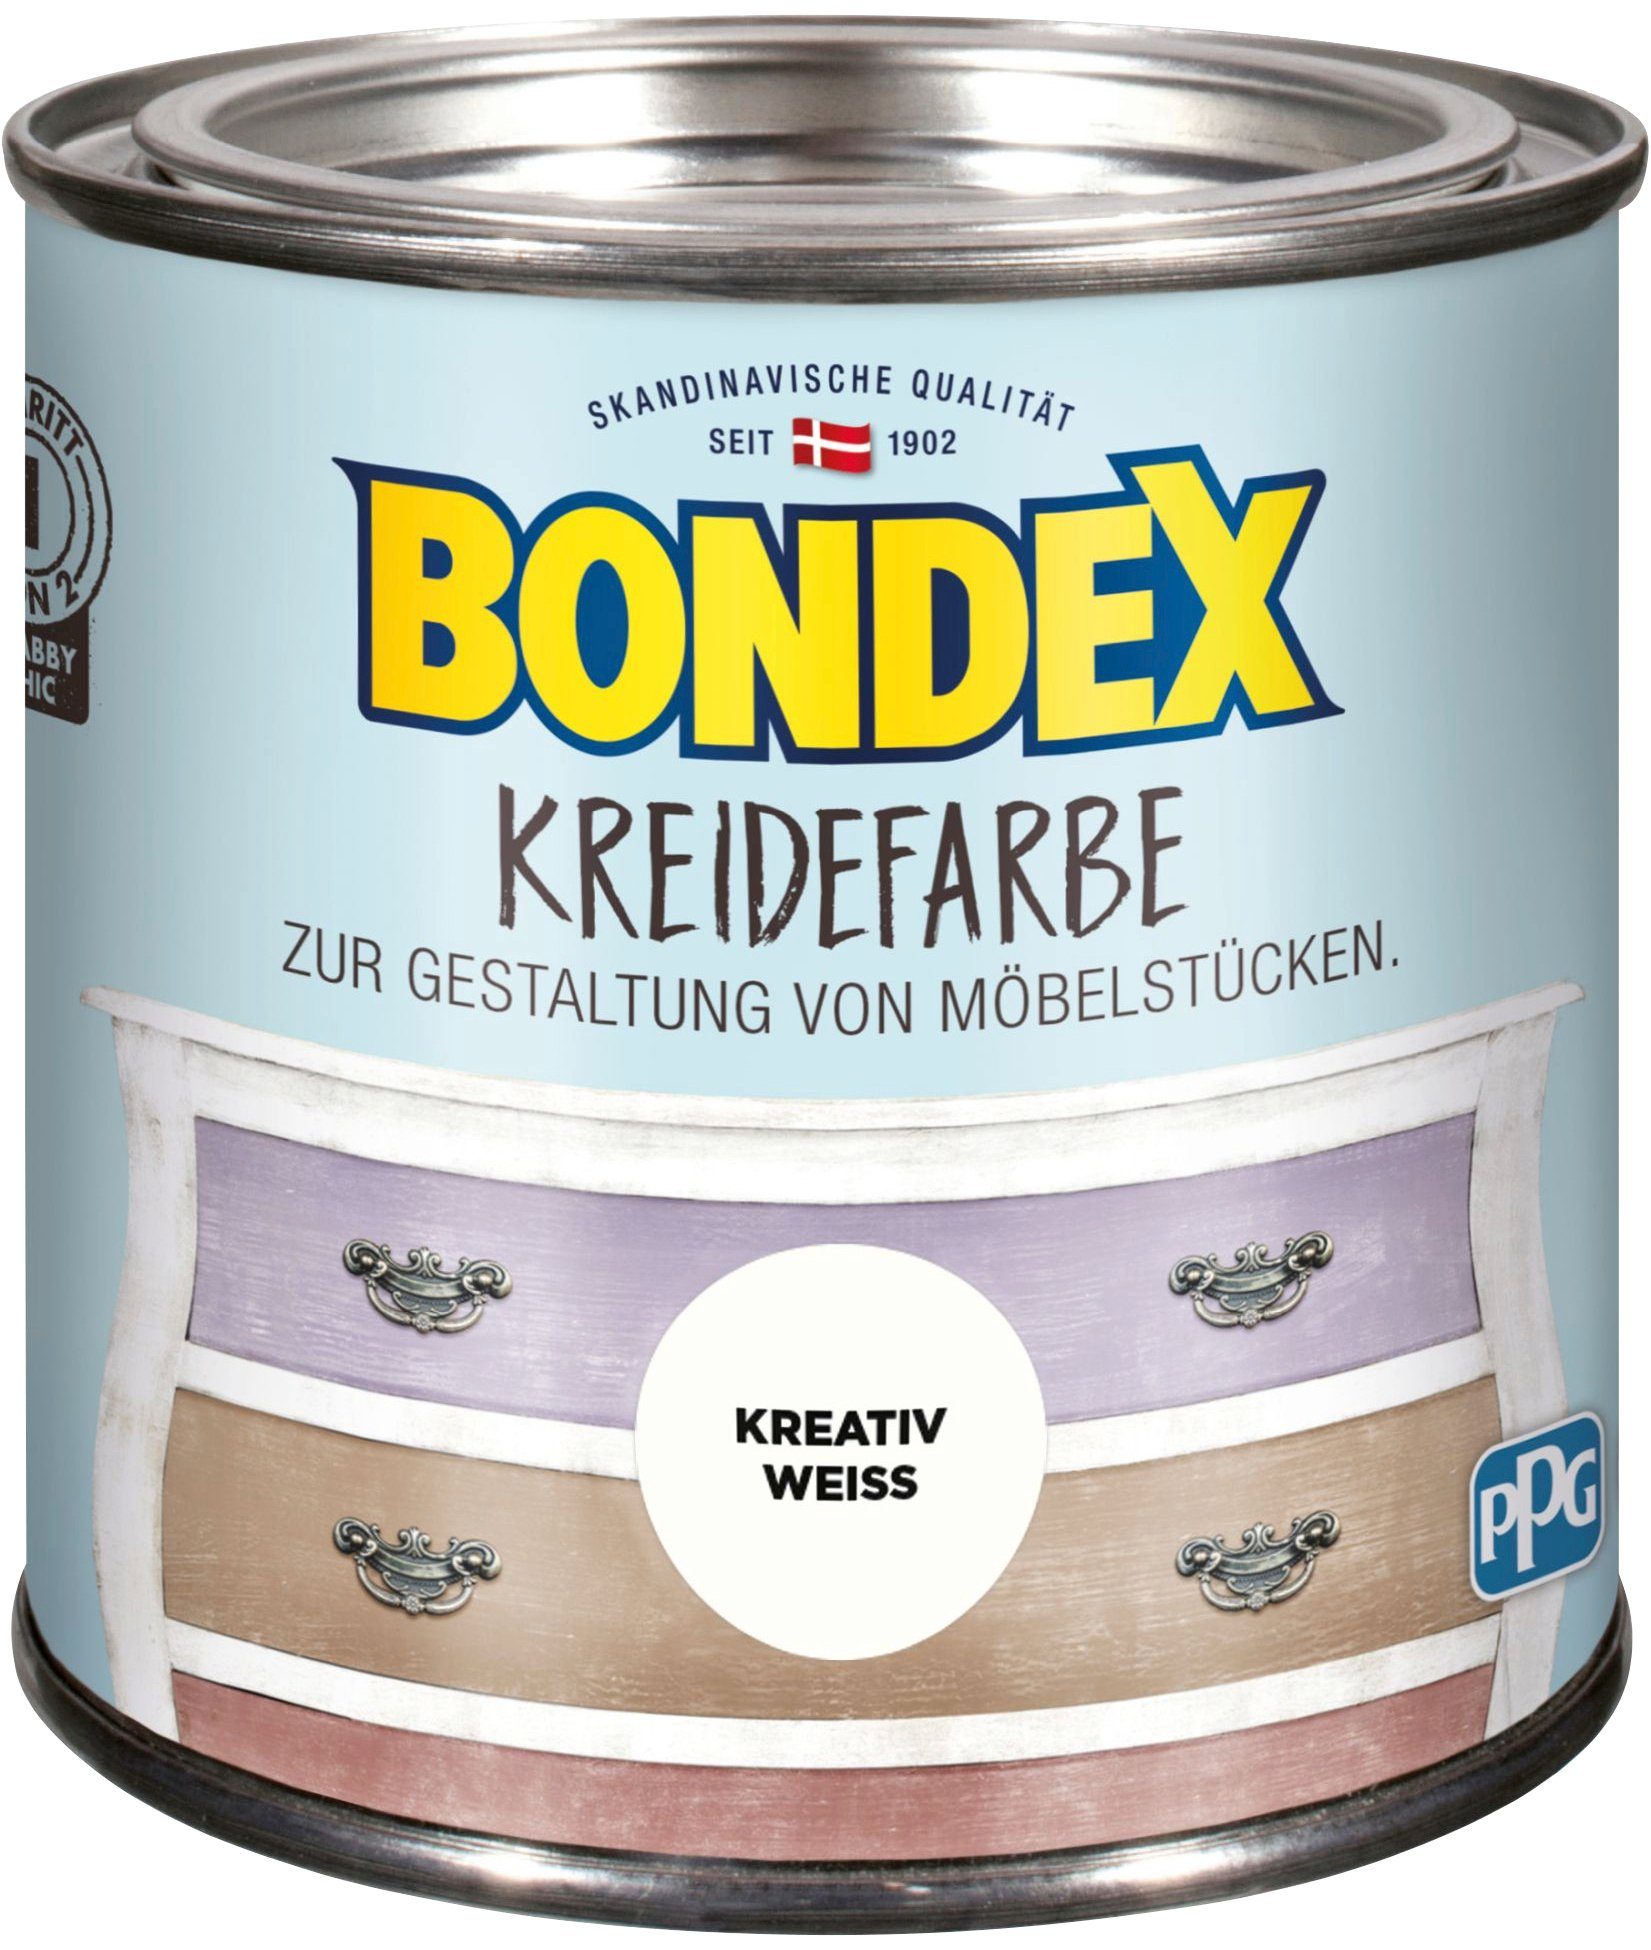 Bondex Kreidefarbe KREIDEFARBE, zur Gestaltung von Möbelstücken, 0,5 l Kreativ Weiss